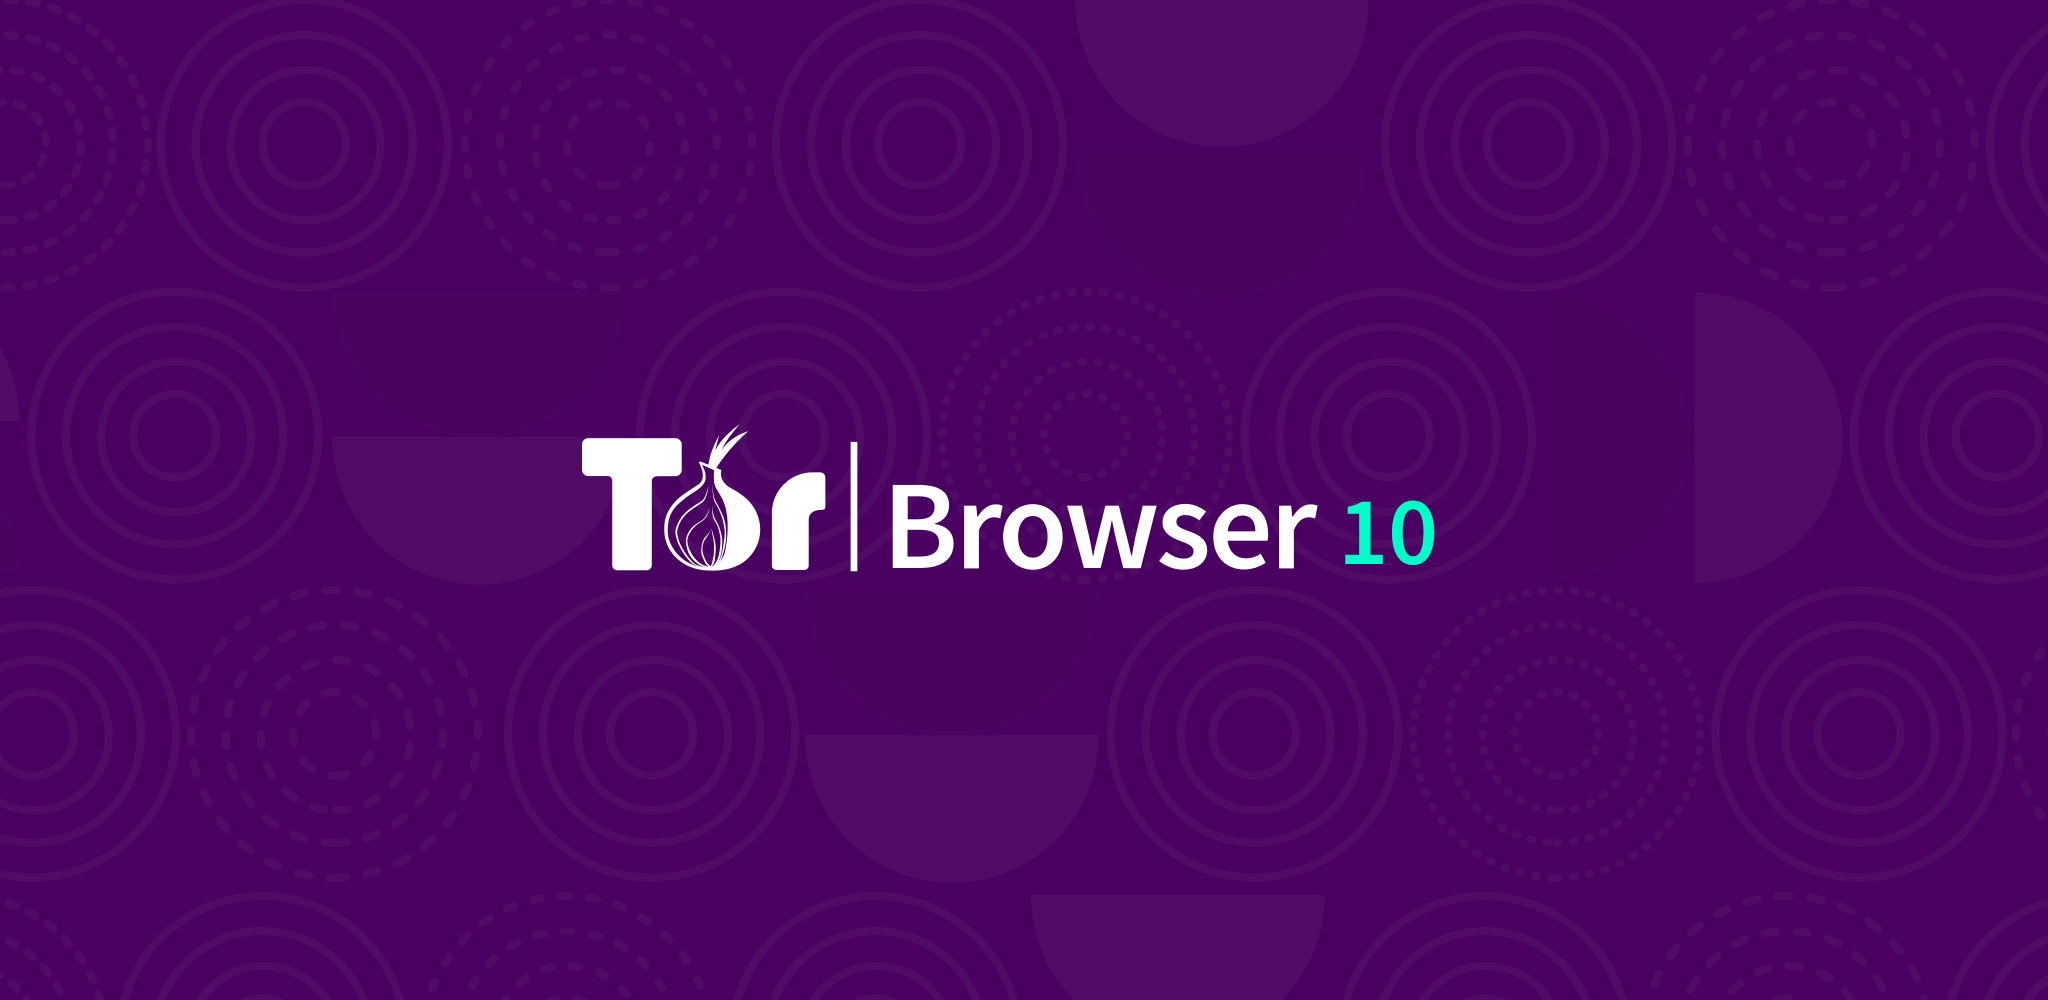 Tor browser ftp мега браузер тор скачать на официальном сайте megaruzxpnew4af